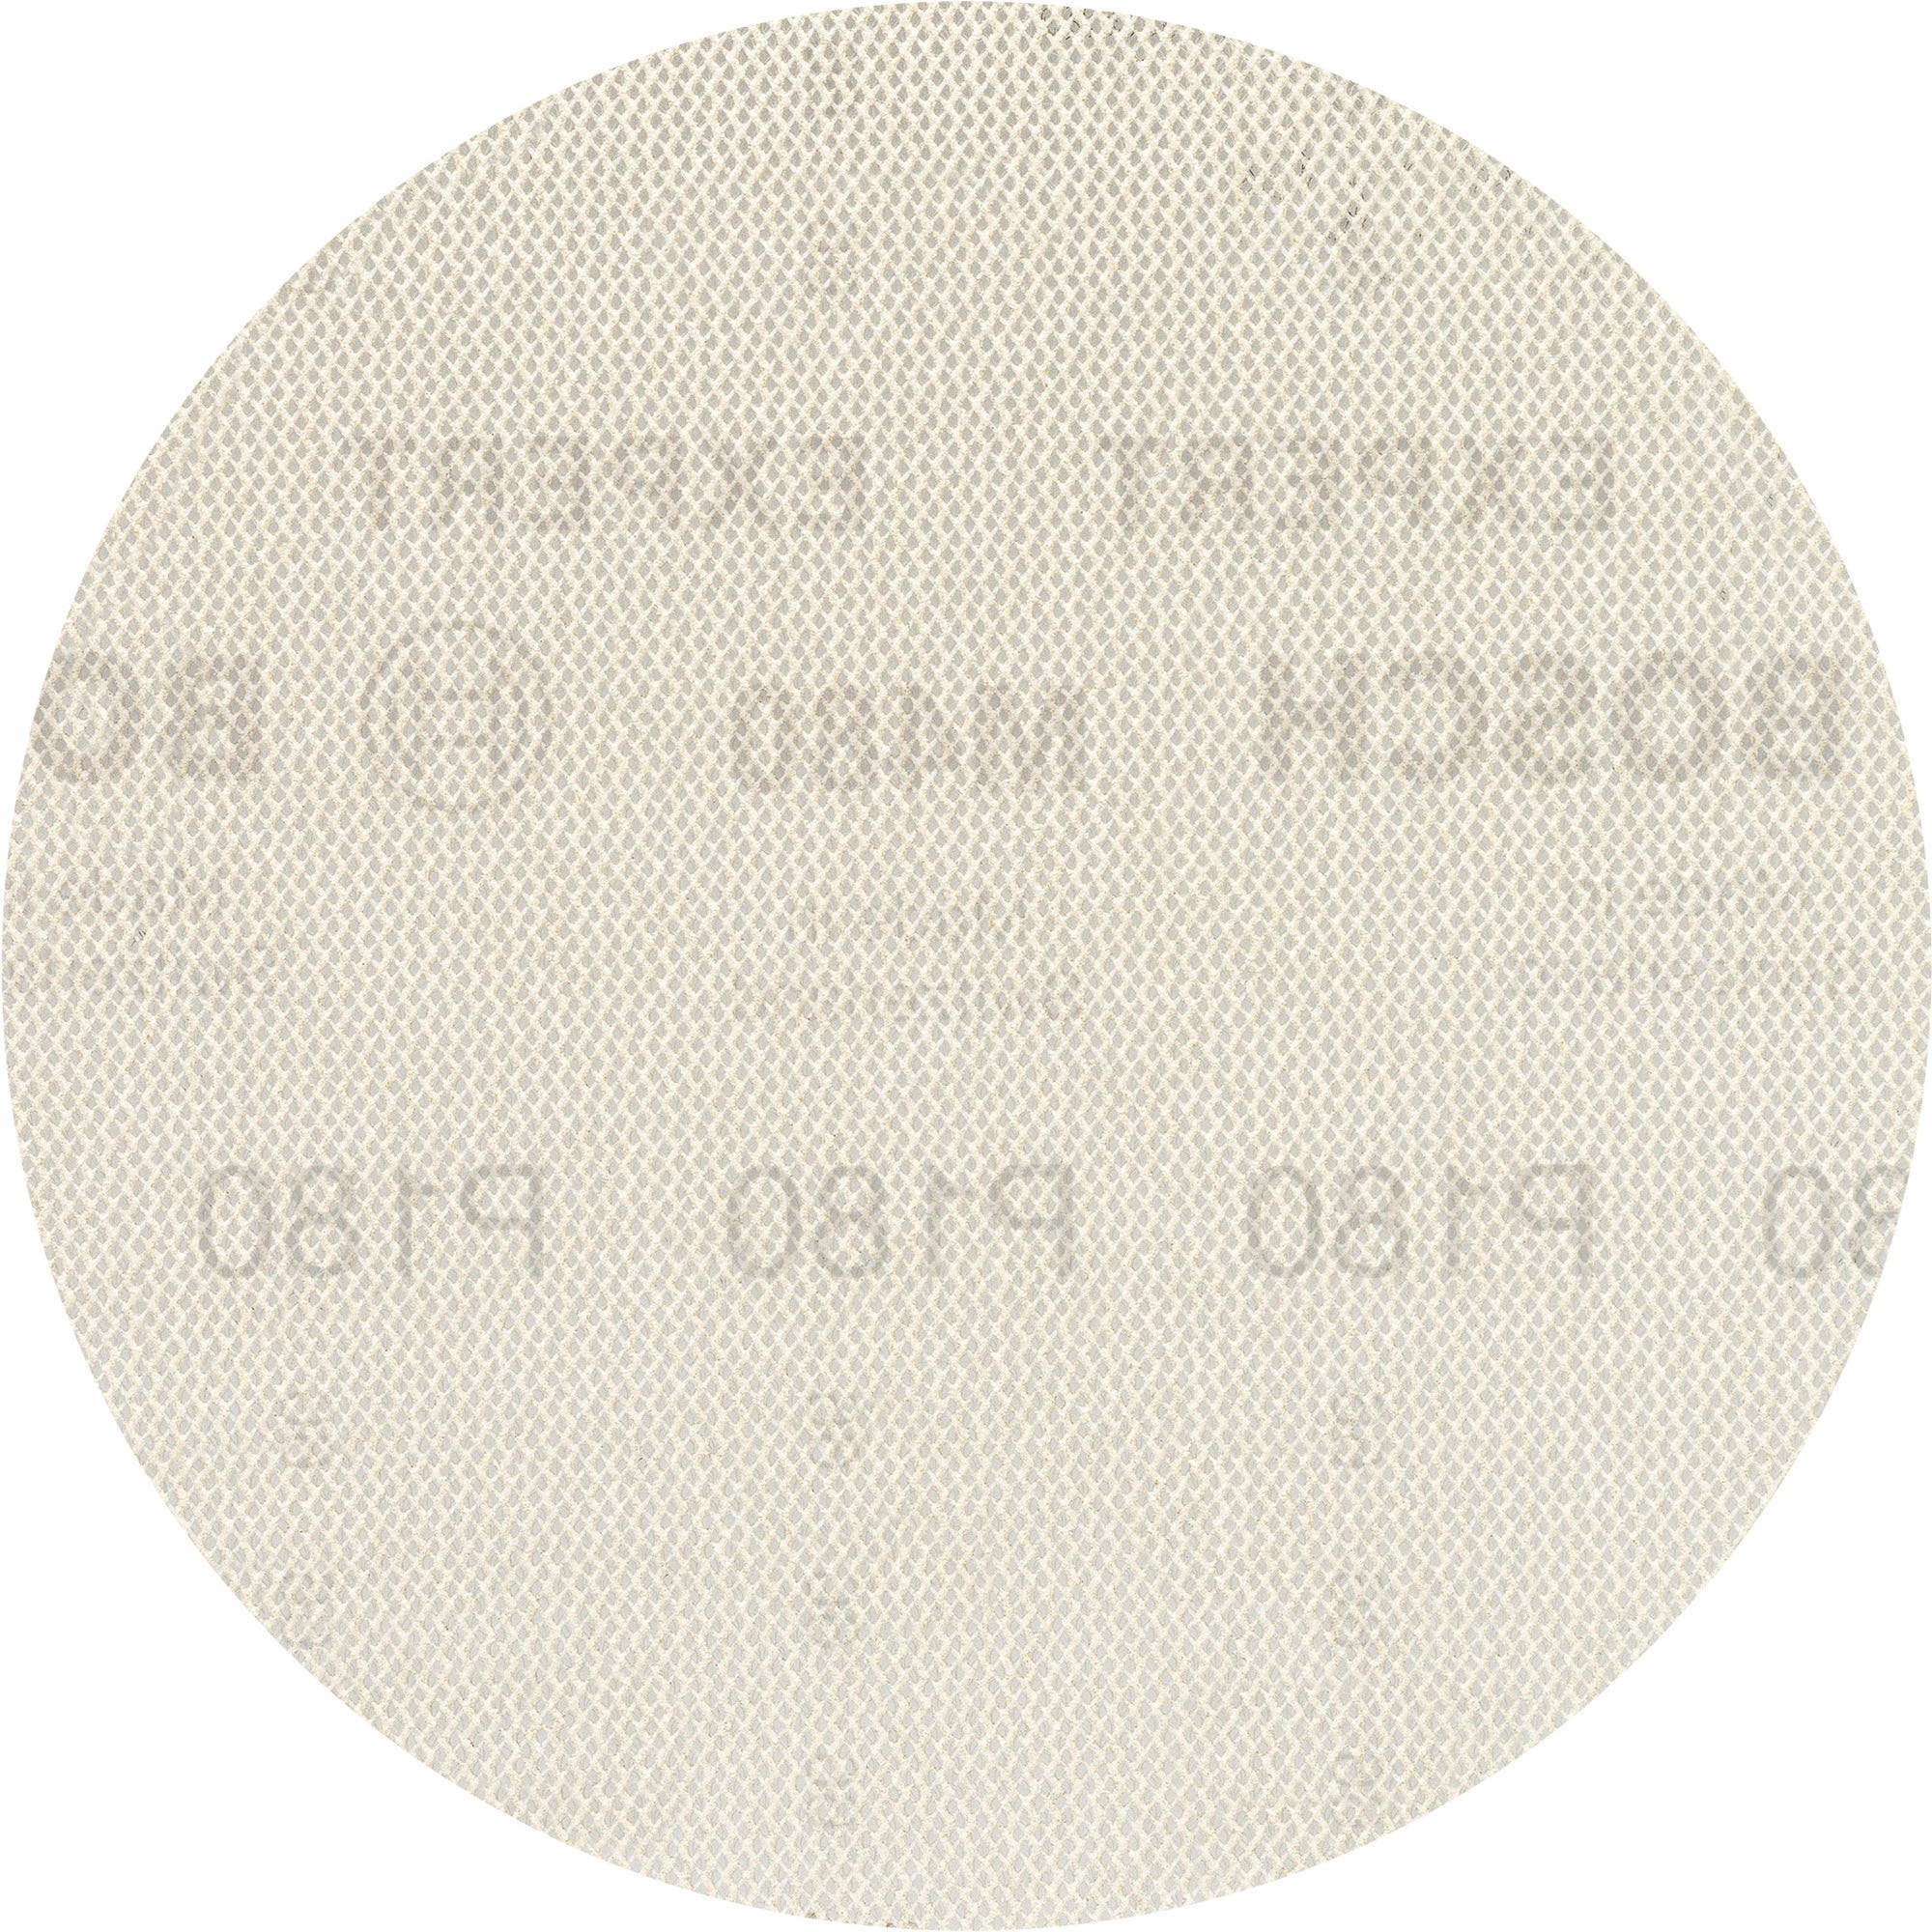 Lot de 5 disques maille céramique spécial platre Diam.225 mm grain 180 - M480 BOSCH 1